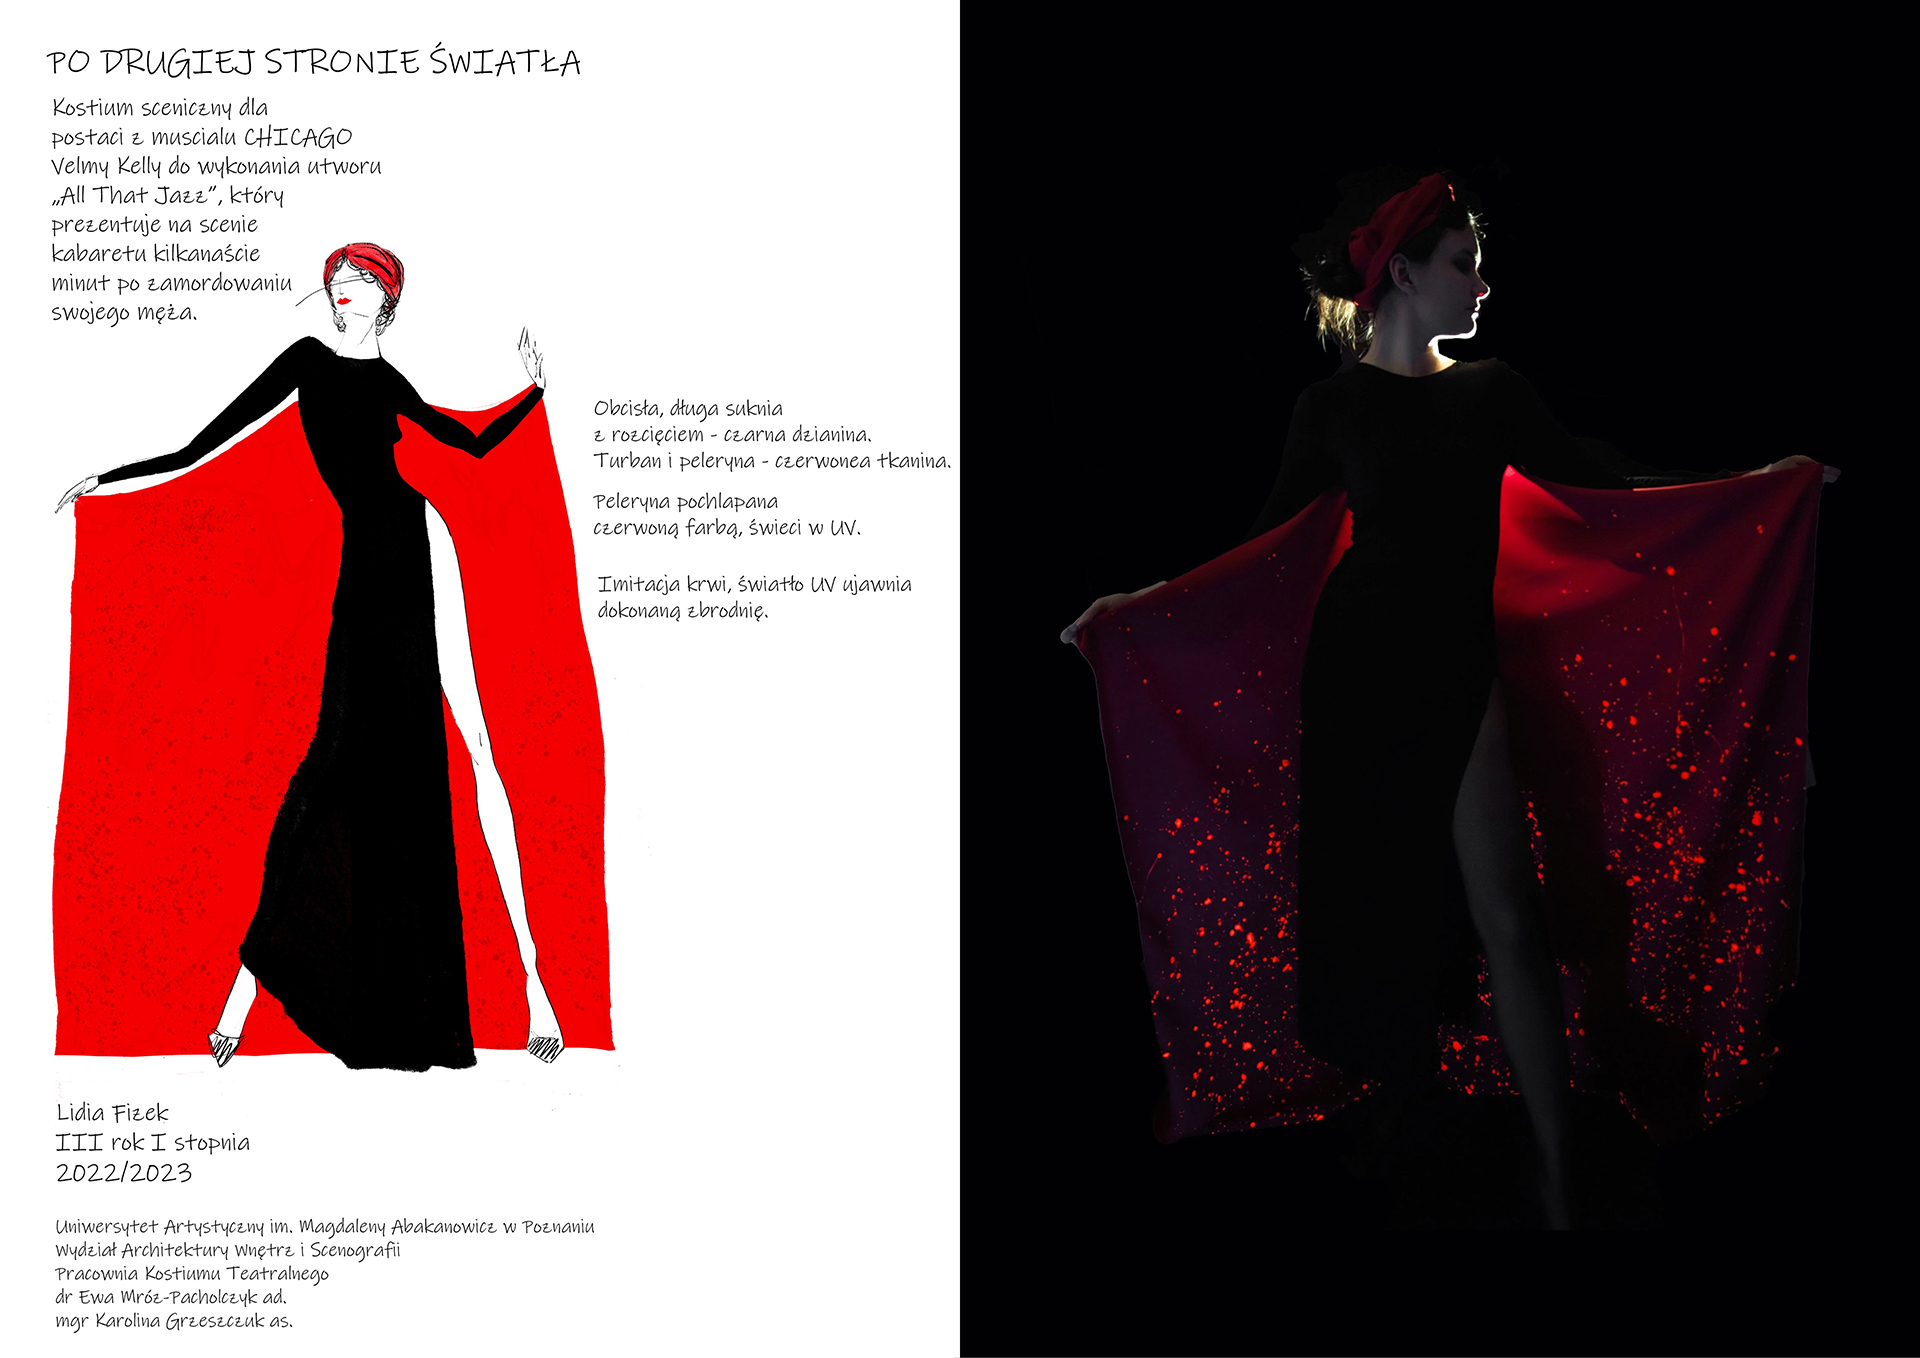 Po lewej rysunek sylwetki w kostiumie z opisami. Po prawej zdjęcie kobiety w czarnej długiej sukni z rozcięciem do biodra. Rozłożone ręce eksponują czerwoną pelerynę z podświetlonymi czerwonymi planami. Na głowie czerwona opaska, tło czarne.